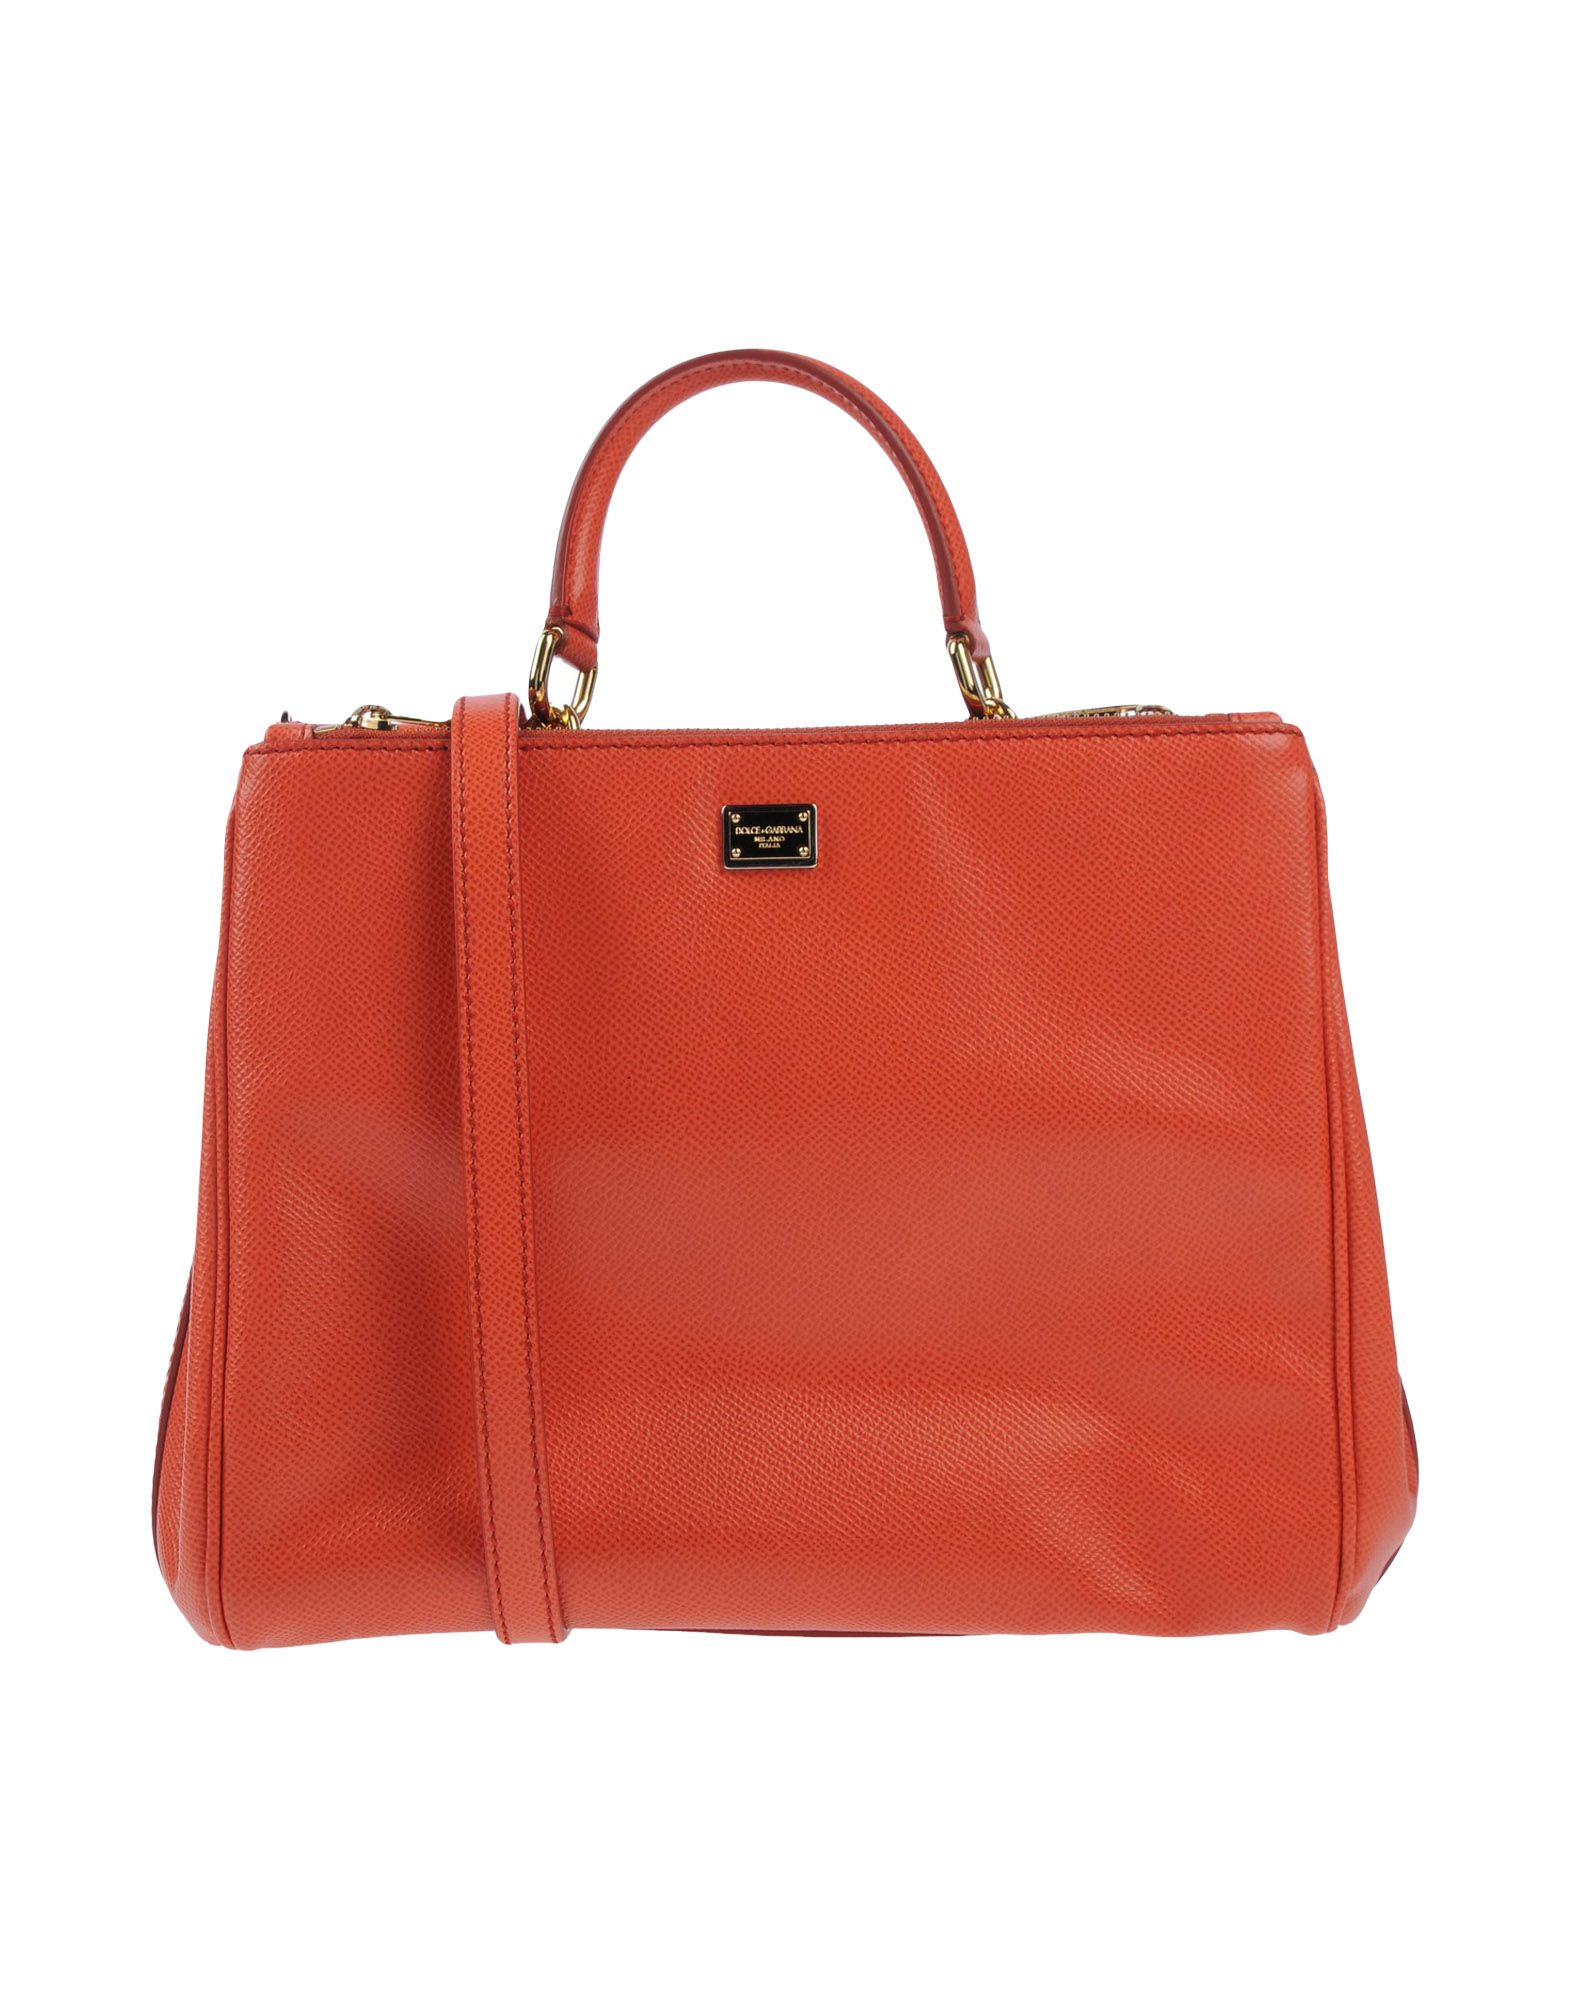 DOLCE & GABBANA Handbag,45415493GC 1